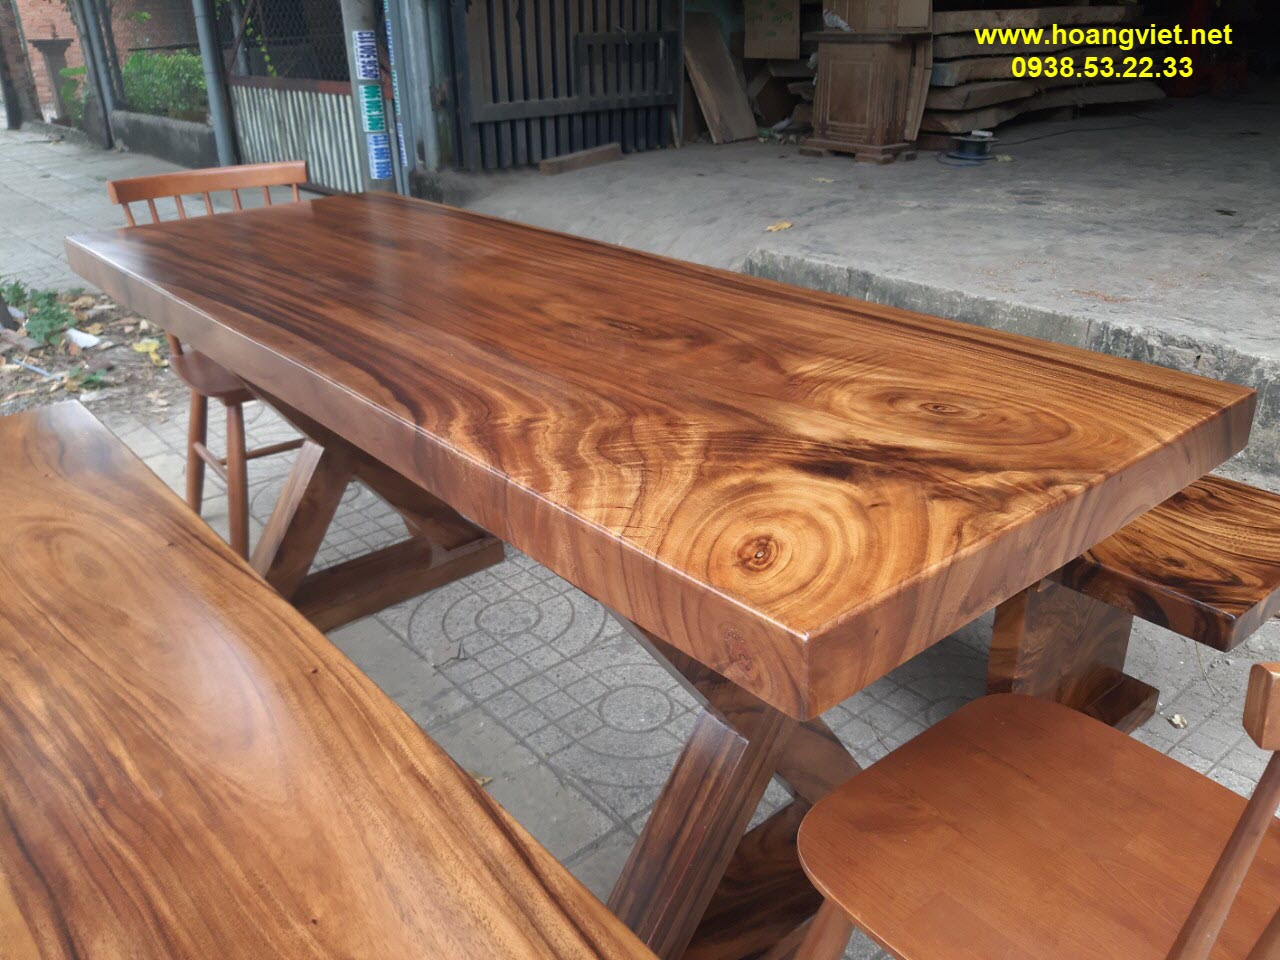 Những bộ bàn k3 gỗ nguyên khối đẹp nhất thị trường.